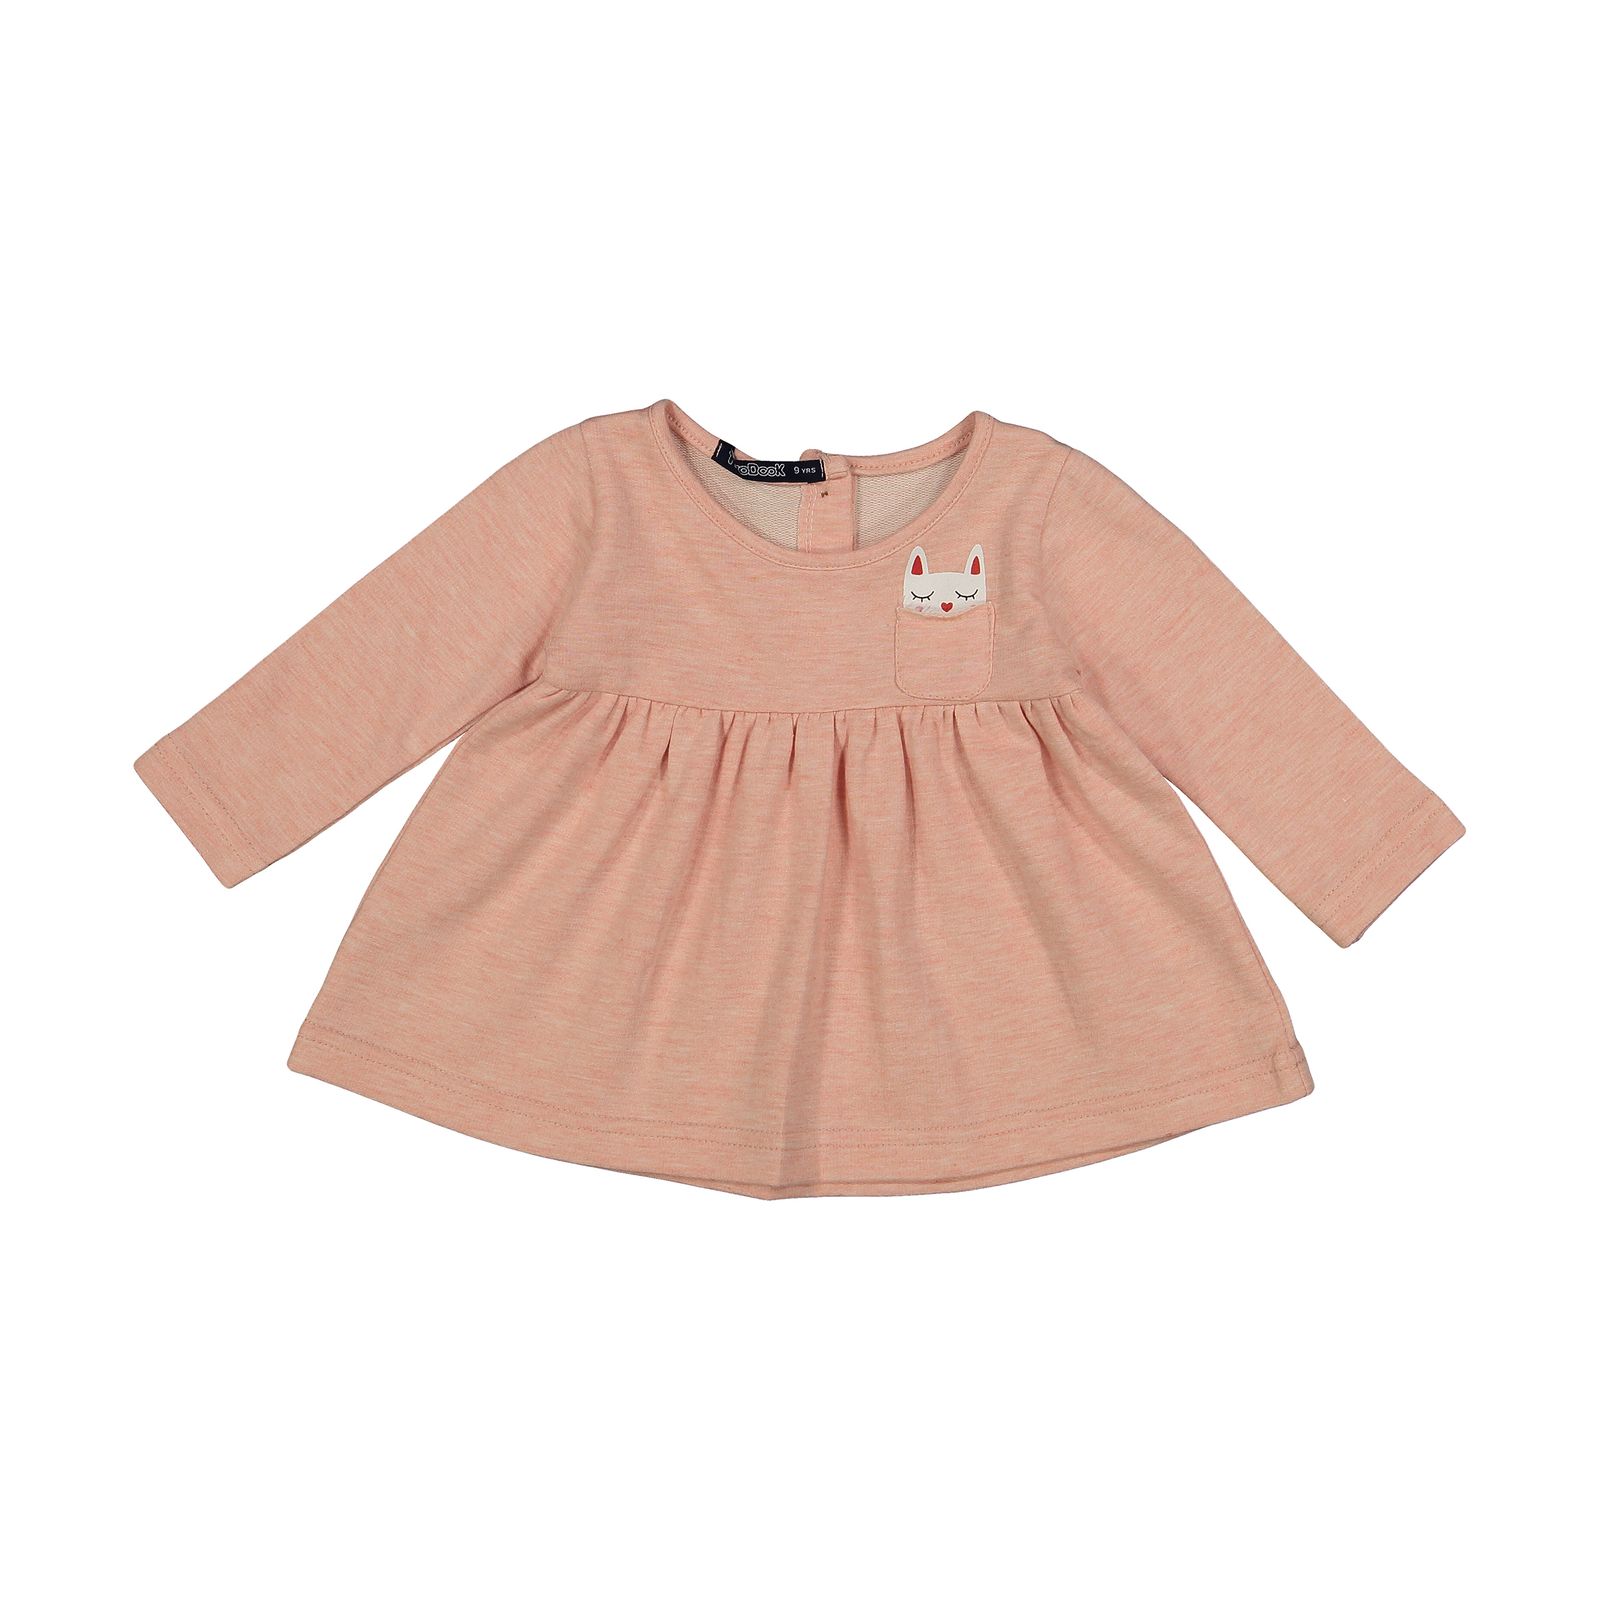 پیراهن نوزادی دخترانه تودوک مدل 2151189-20 -  - 1